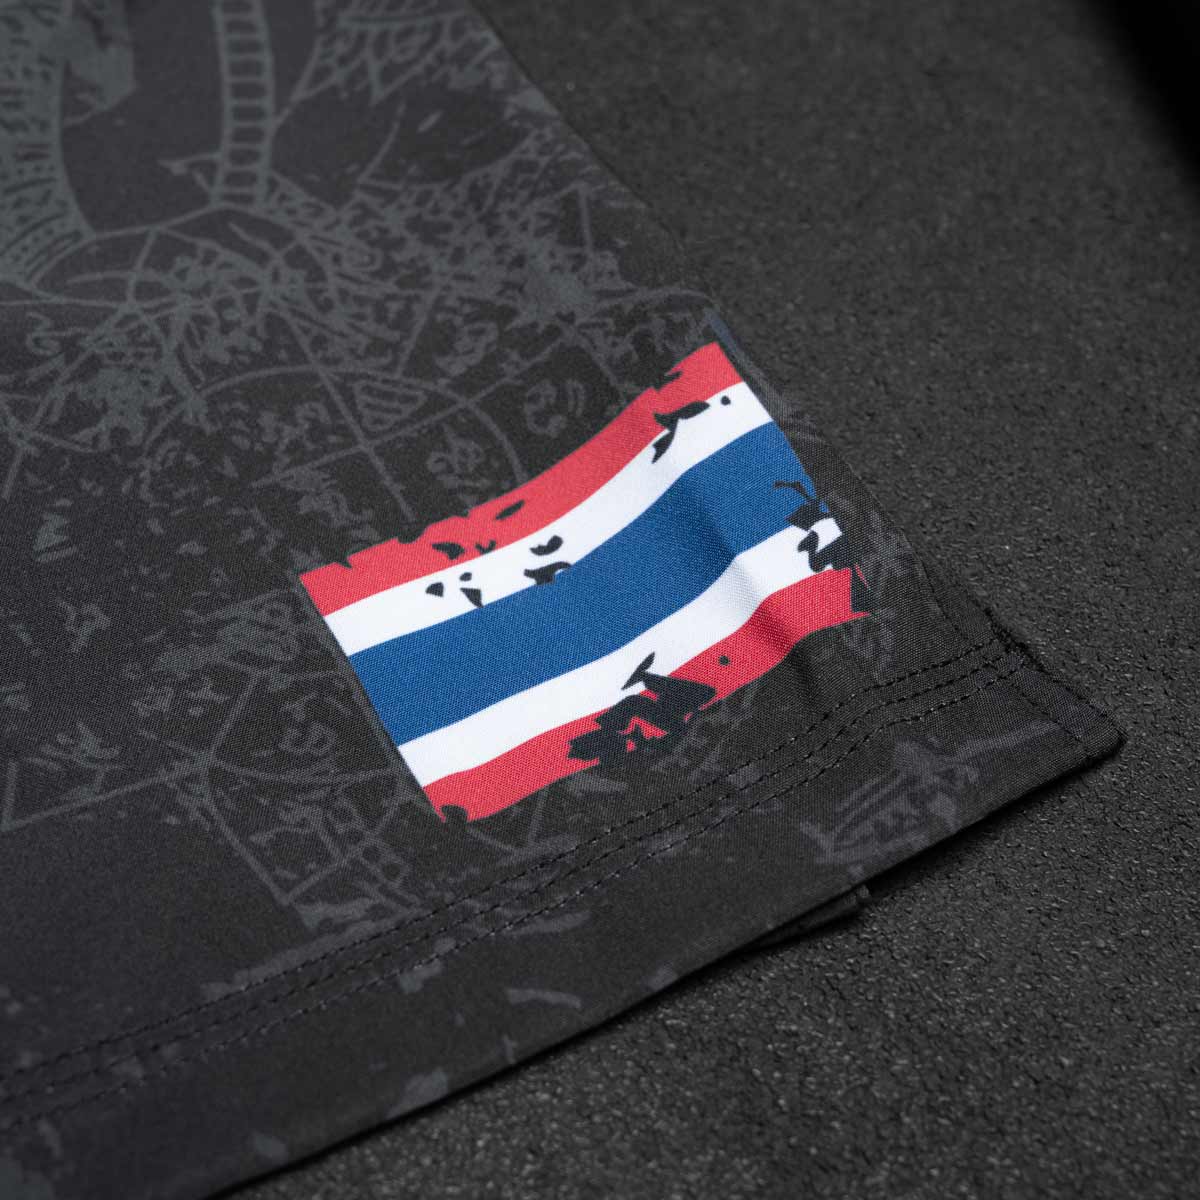 Phantom EVO Muay Thai Fightshorts mit thailändischer Flagge und Sak Yant Tiger Design.  Hochmoderne Fightshorts aus atmungsaktivem Stoff und ultimativer Bewegungsfreiheit.  Ideal für dein Thaibox Training und Wettkampf.